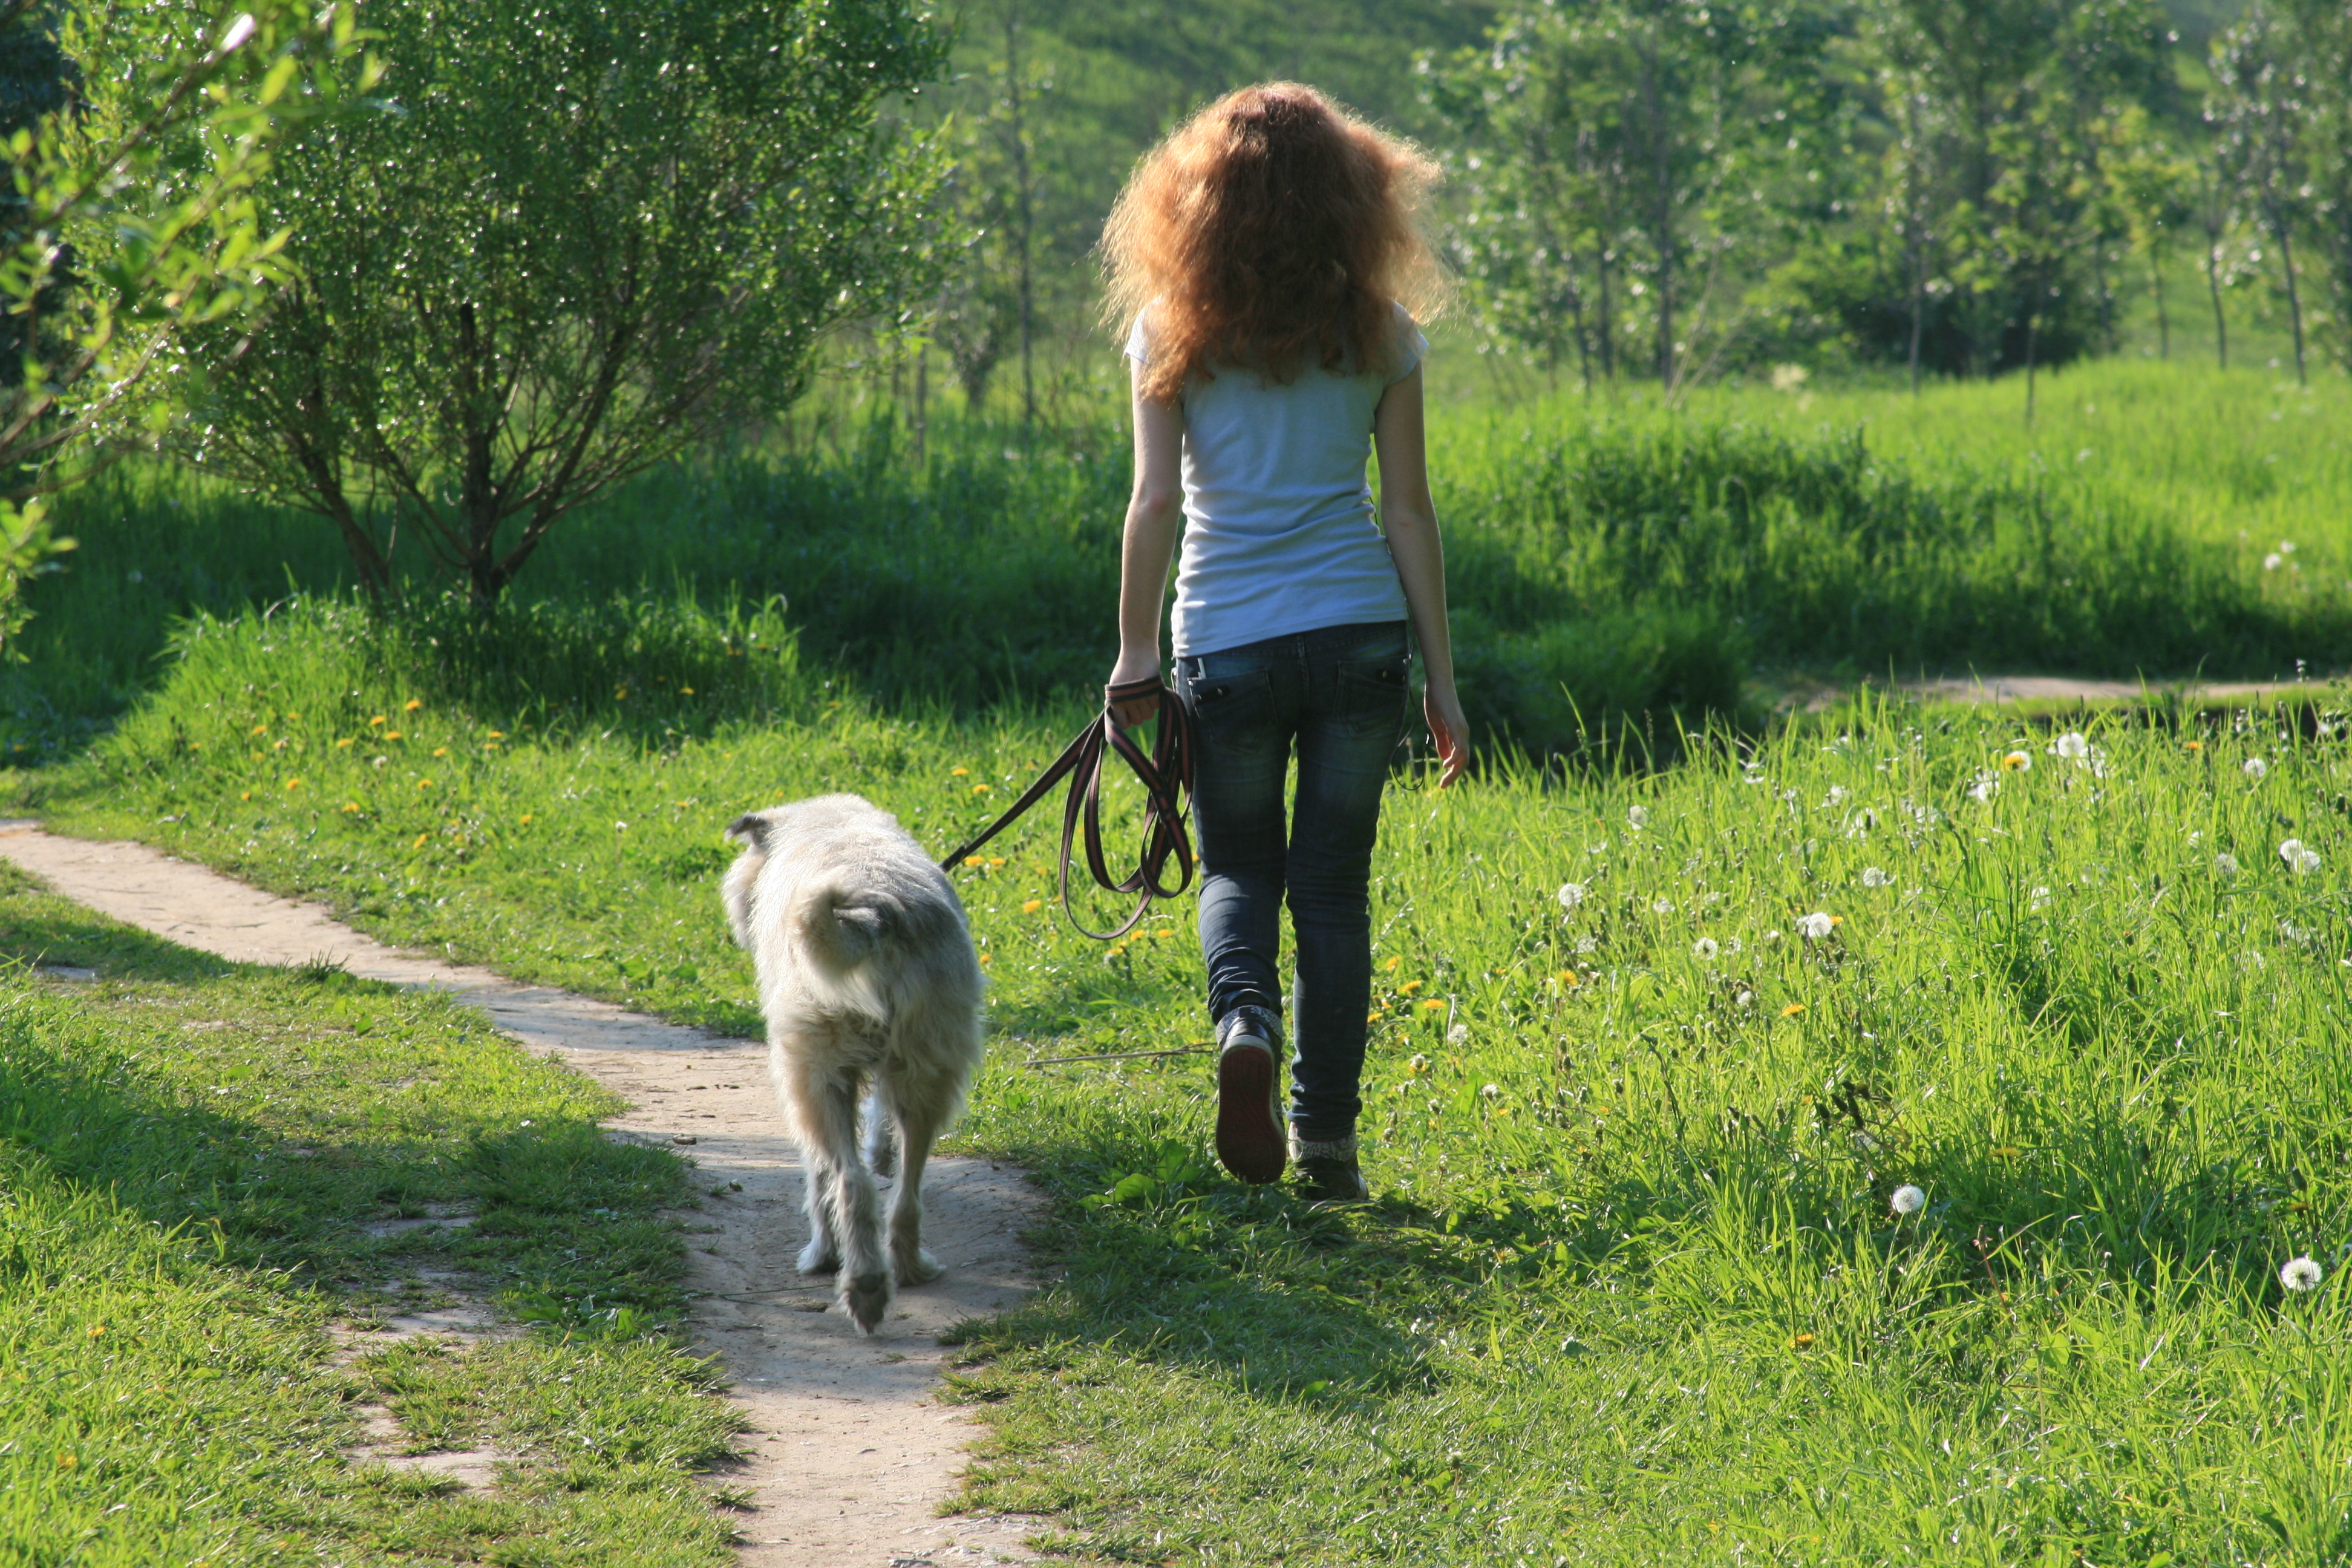 Вывел погулять. Девочка с собакой. Девушка гуляет с собакой на поводке. Девушка гуляет с собакой. Девушка на прогулке с собакой.